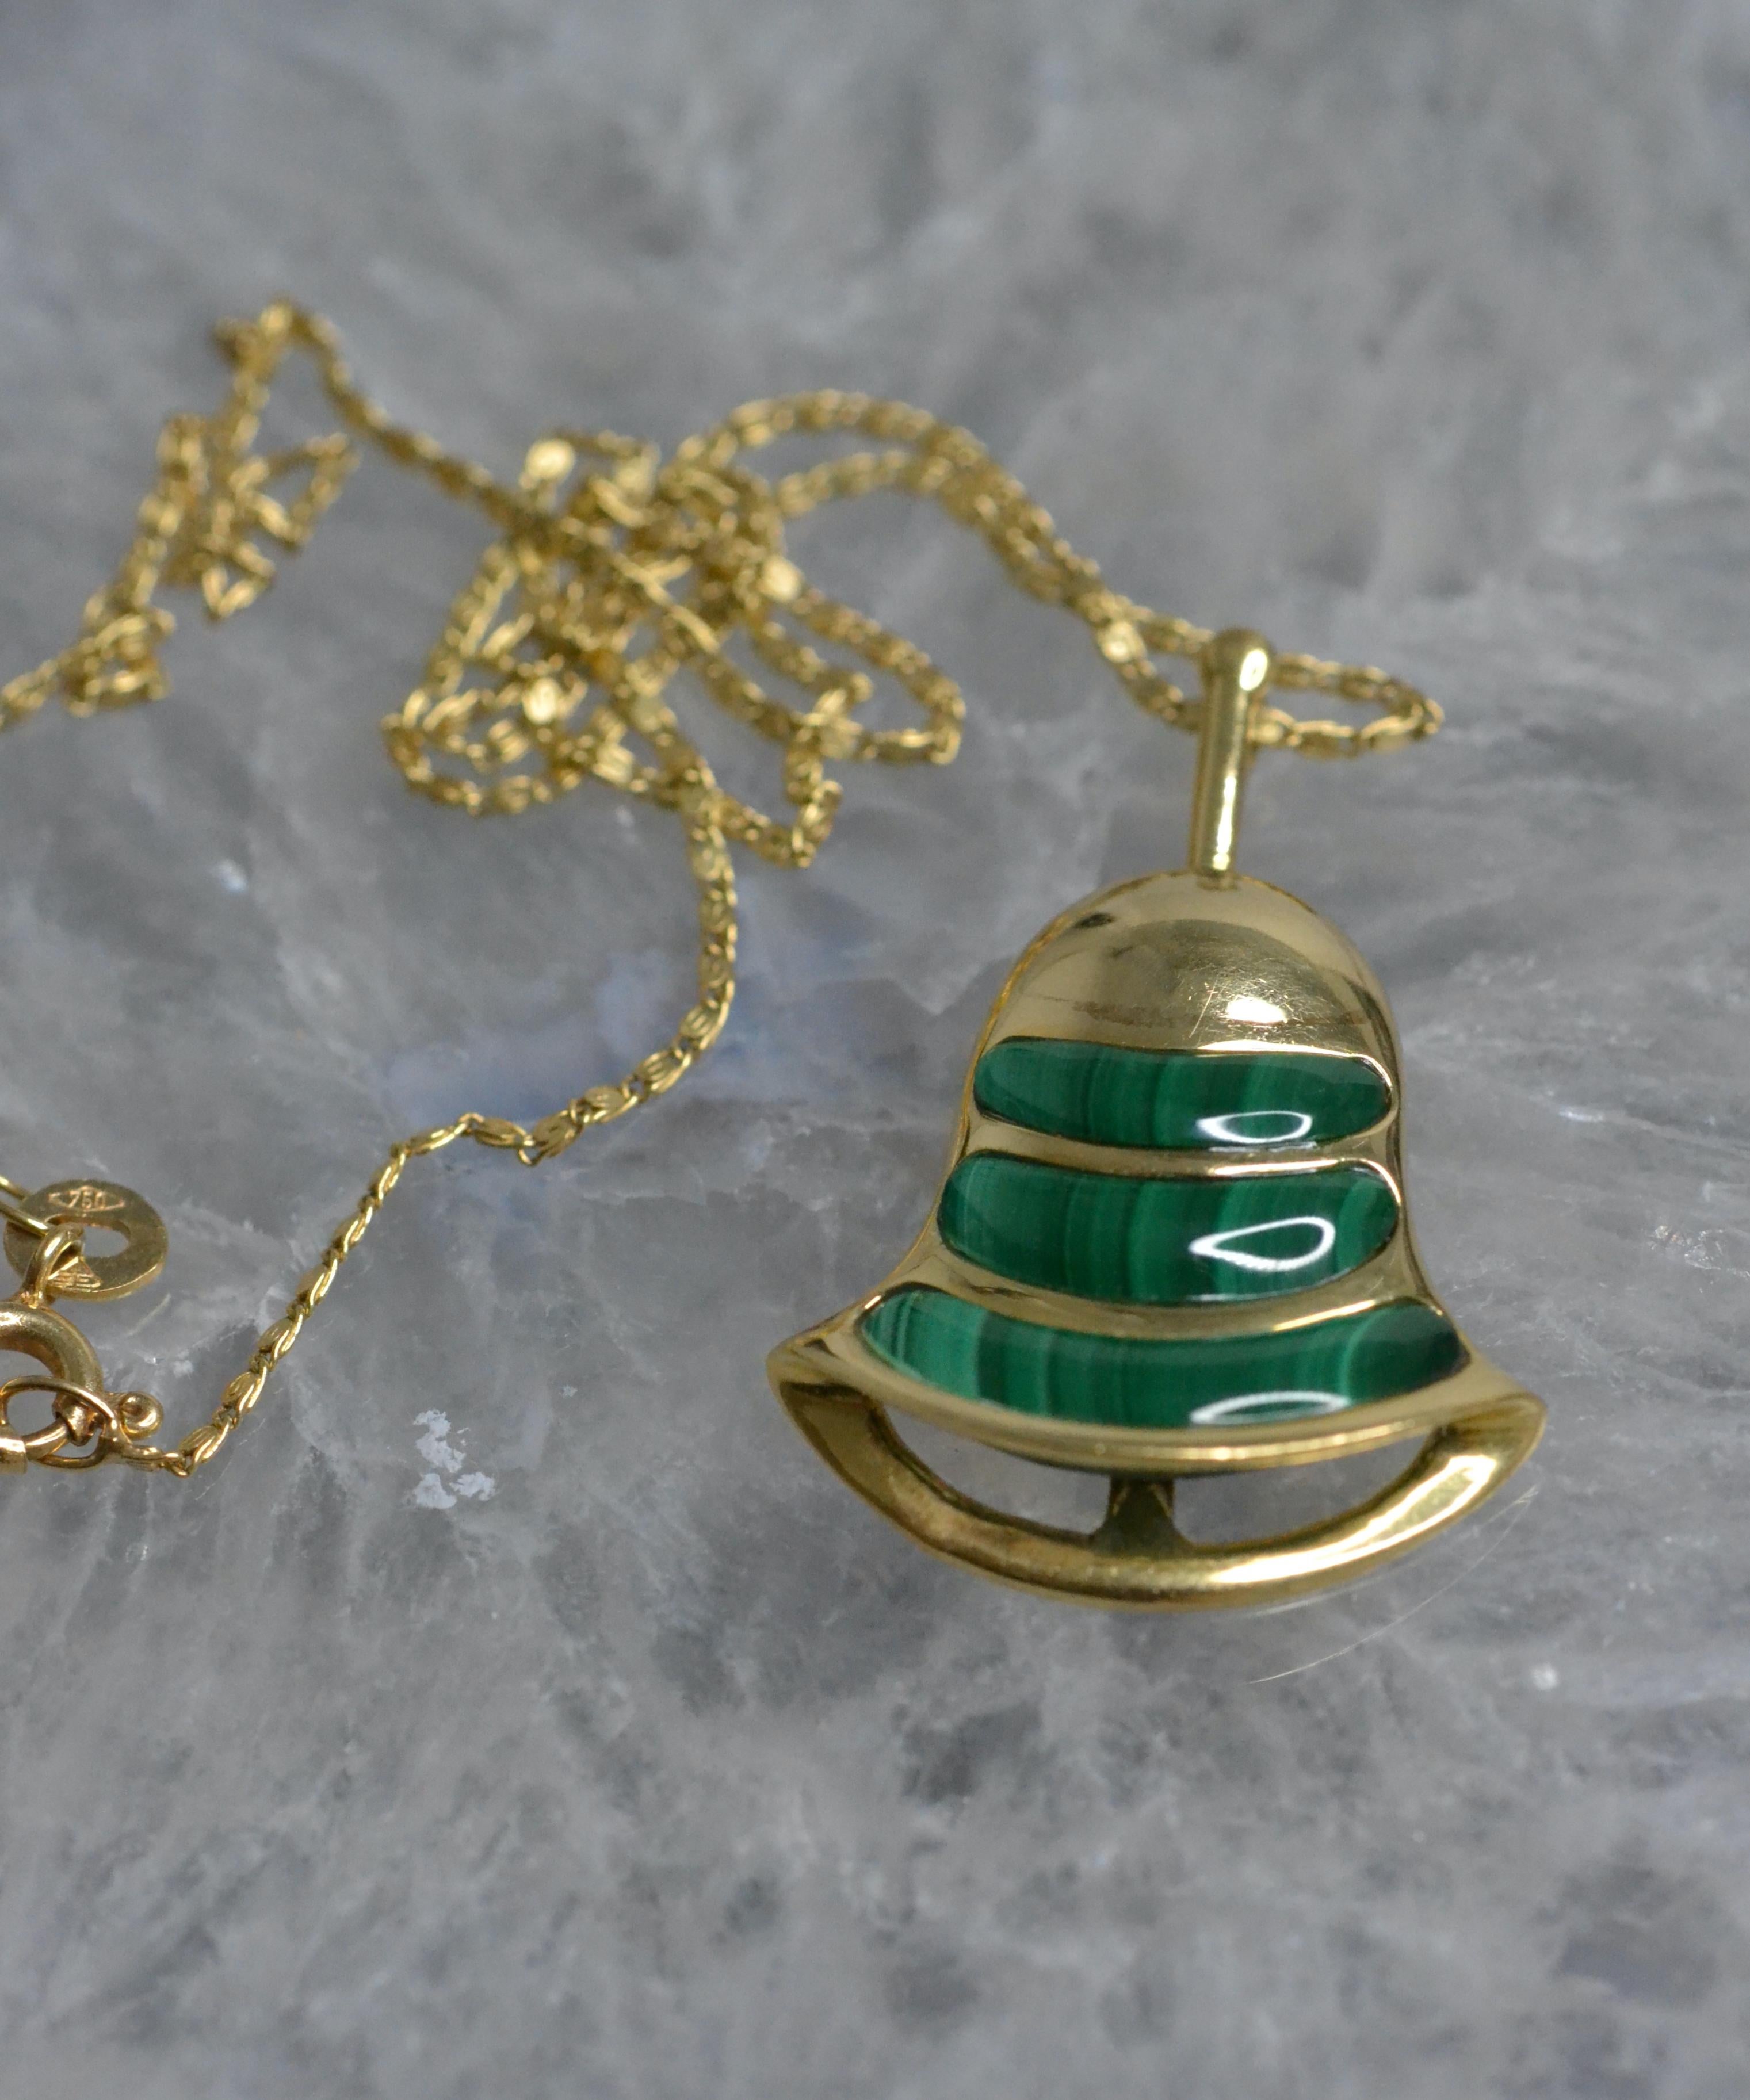 Vintage 18k Gold Bell Halskette mit Malachit

Diese Glockenhalsketten im Vintage-Stil sind die perfekte Möglichkeit, jedem Outfit einen Farbtupfer zu verleihen. Die in Malachit, rotem Jaspis, Tigerauge und Onyx erhältlichen Halsketten in limitierter